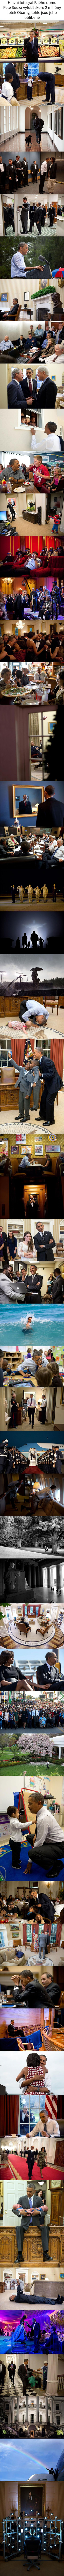  Nejlepší fotky Obamy 